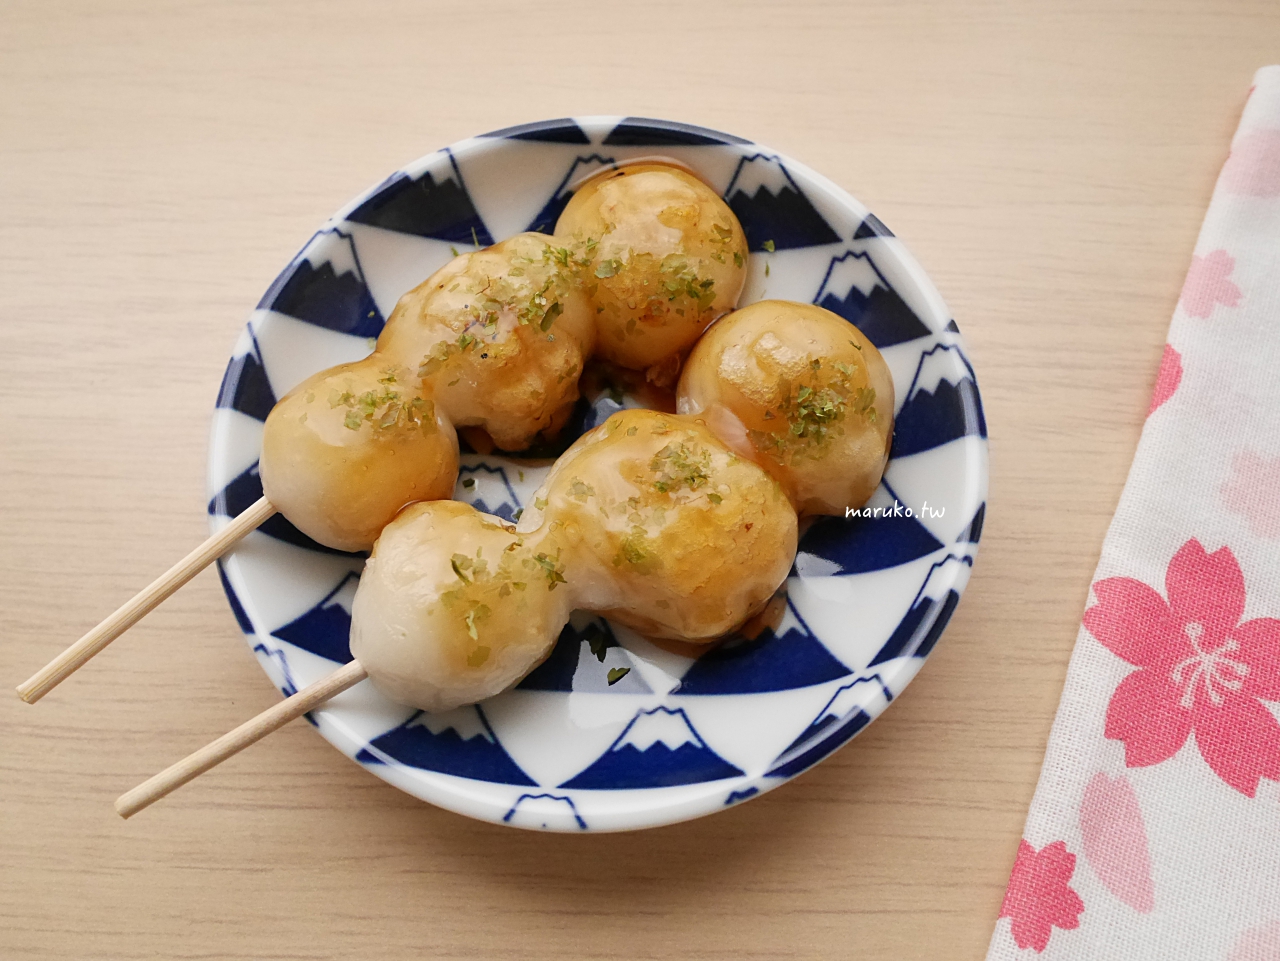 【食譜】7種日式傳統點心 包含鯛魚燒、糯米糰子、草苺大福、花見糰子食譜分享 @Maruko與美食有個約會